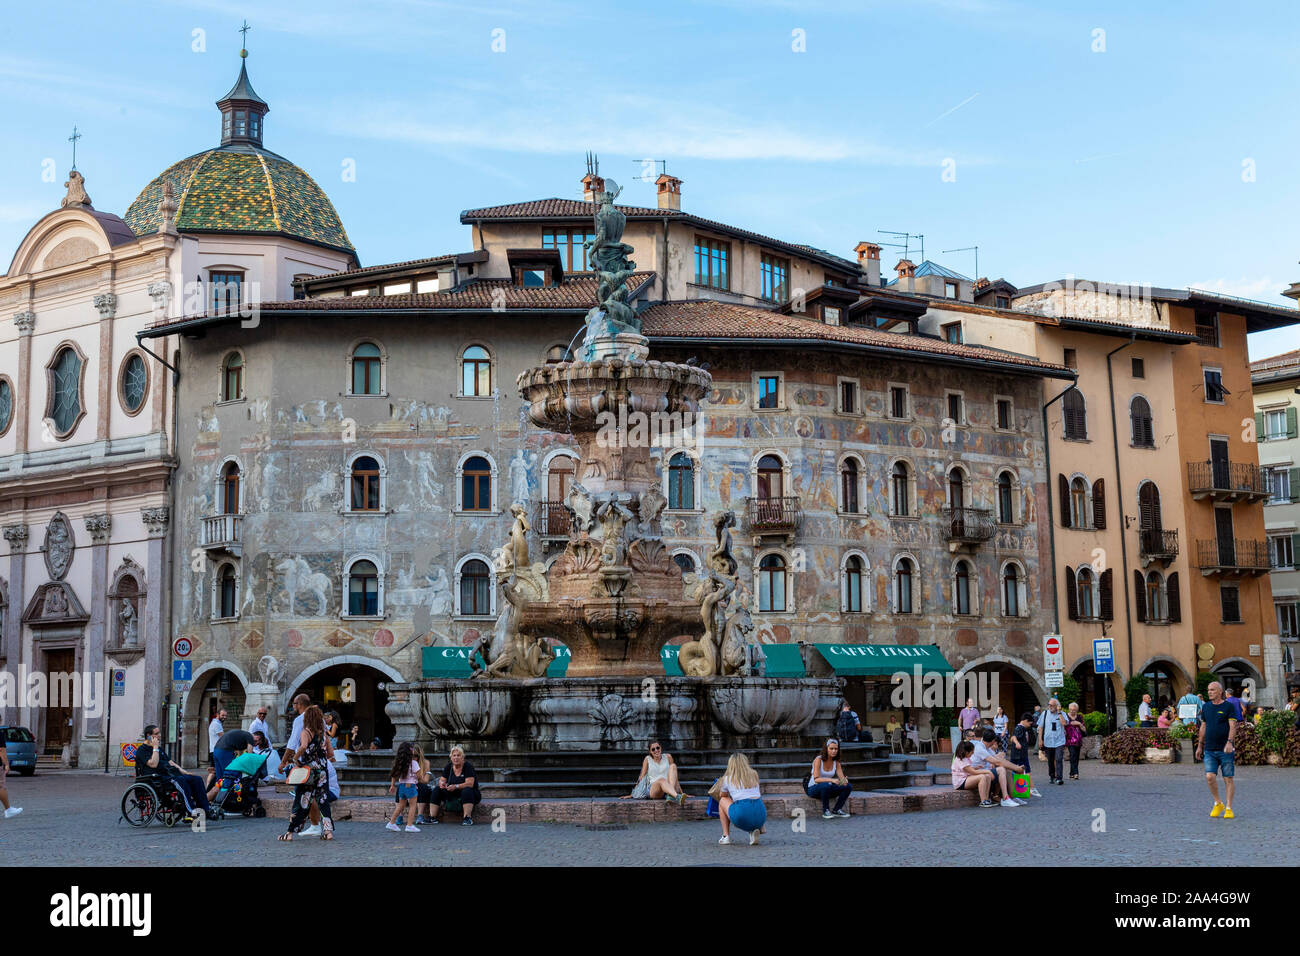 Gruppo di persone sedute in una fontana nella piazza della città, la cattedrale di background, Trento, Trentino, Italia, Europa Foto Stock